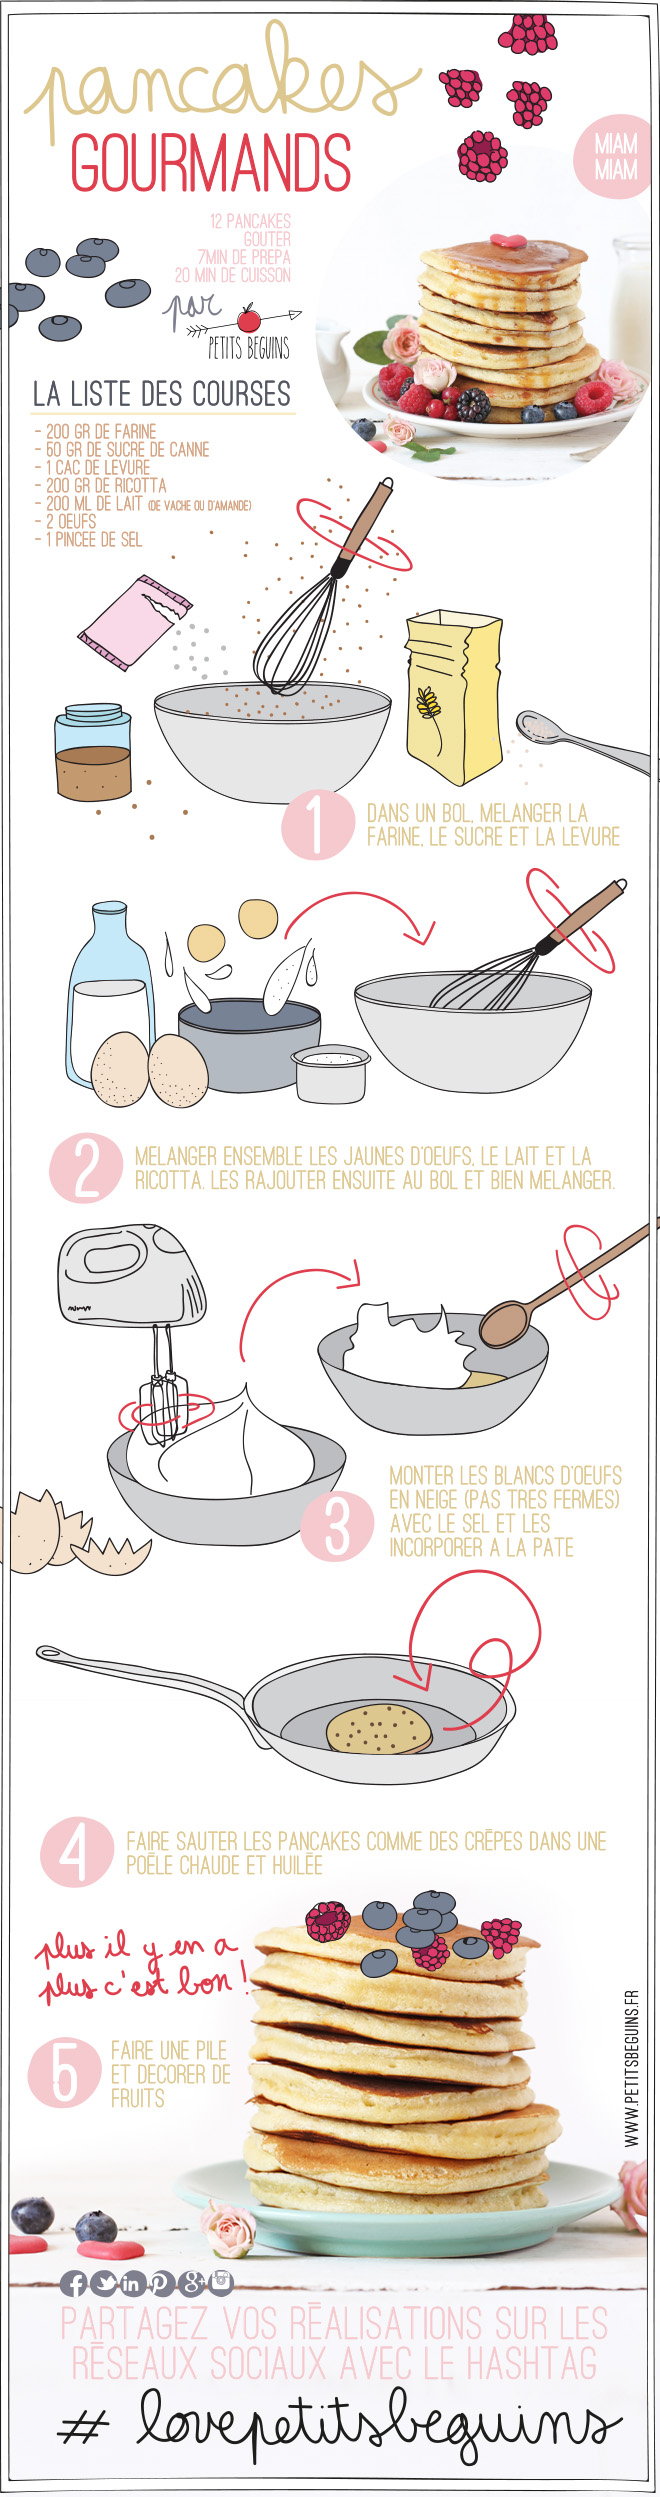 Pancakes gourmands - Recette - Gourmandise - Petits Béguins